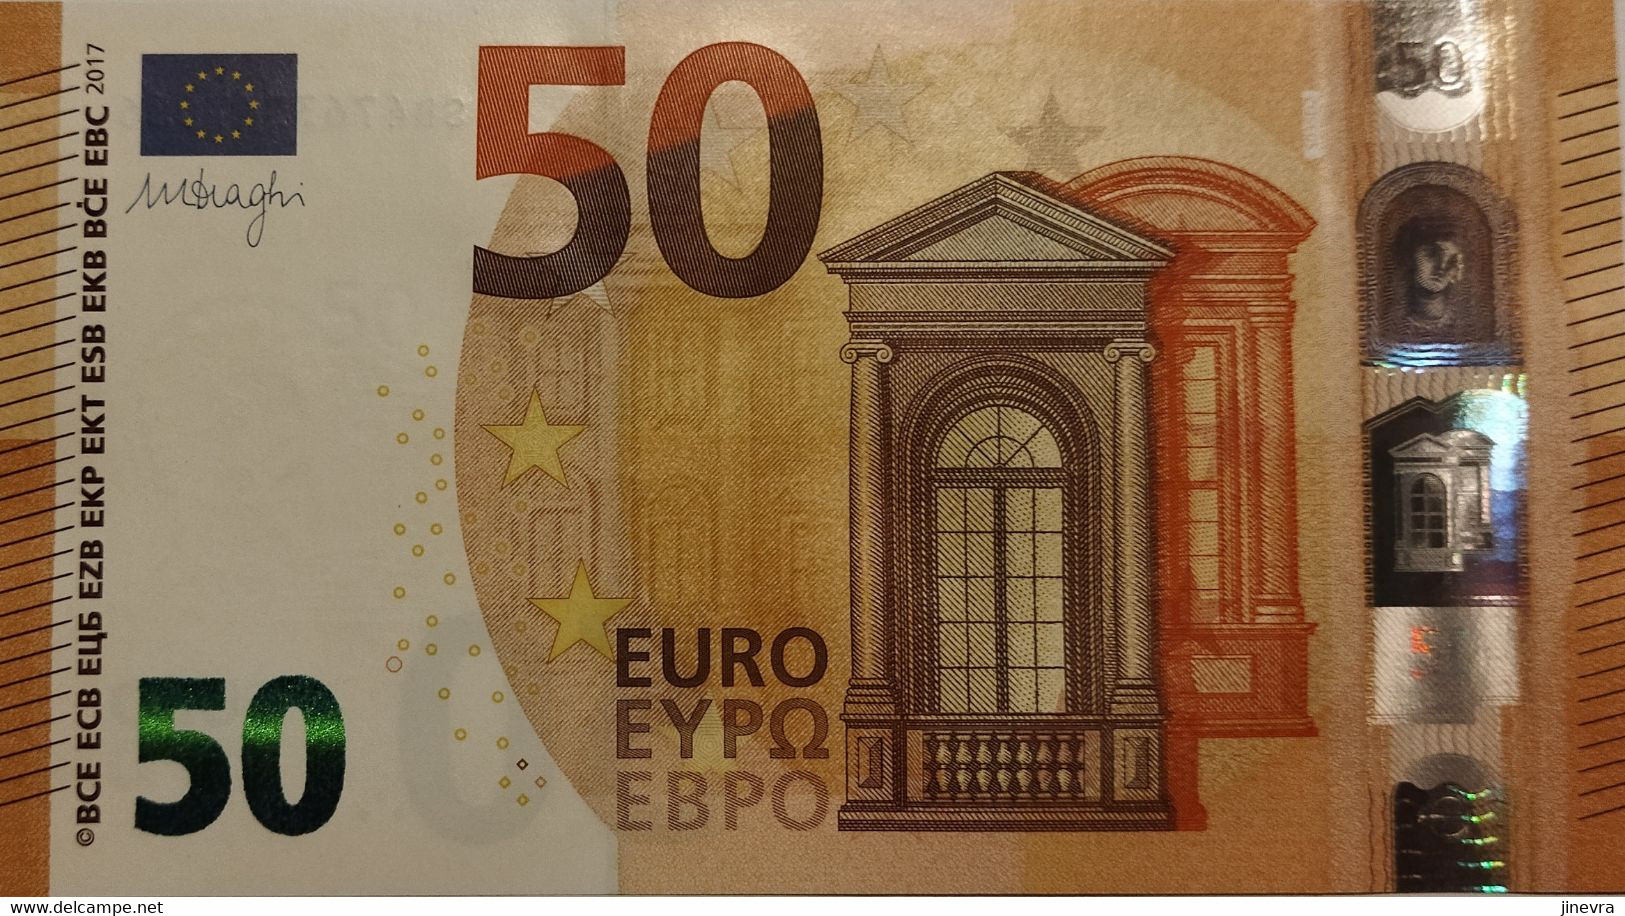 EUROPEAN UNION 50 EURO 2017 PICK 23s UNC - Andere - Europa